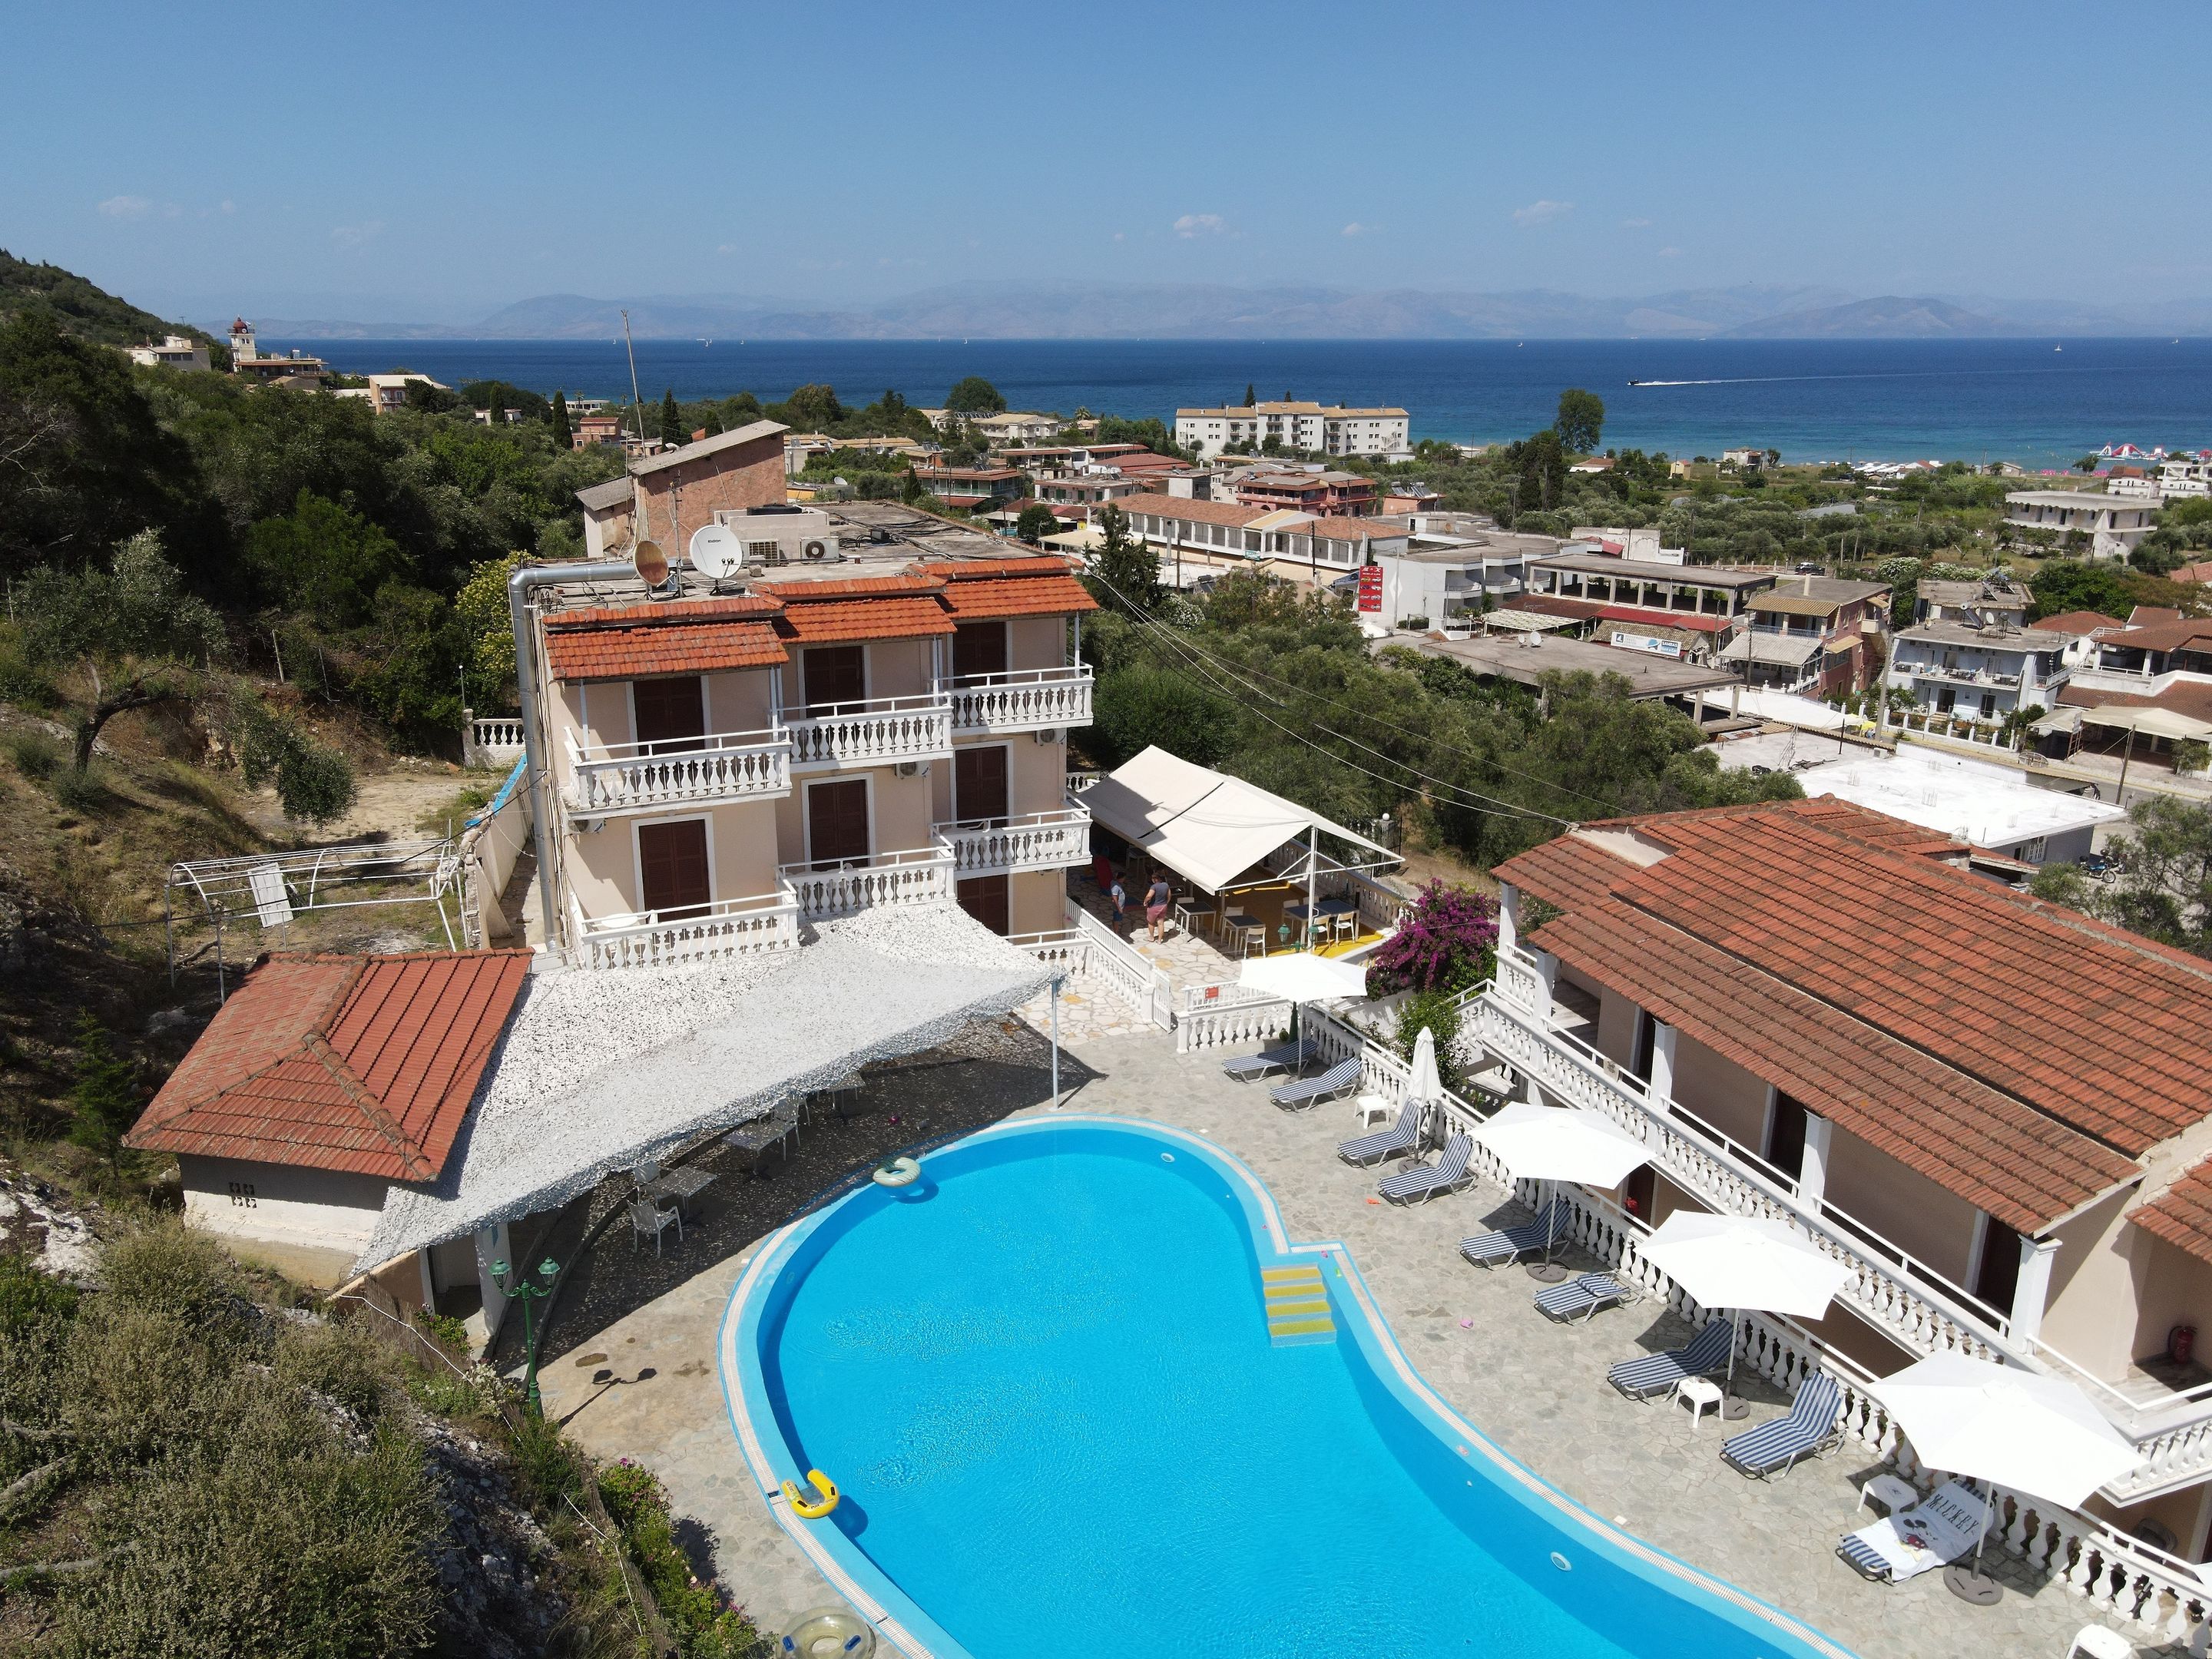 Corfu Panorama Photo